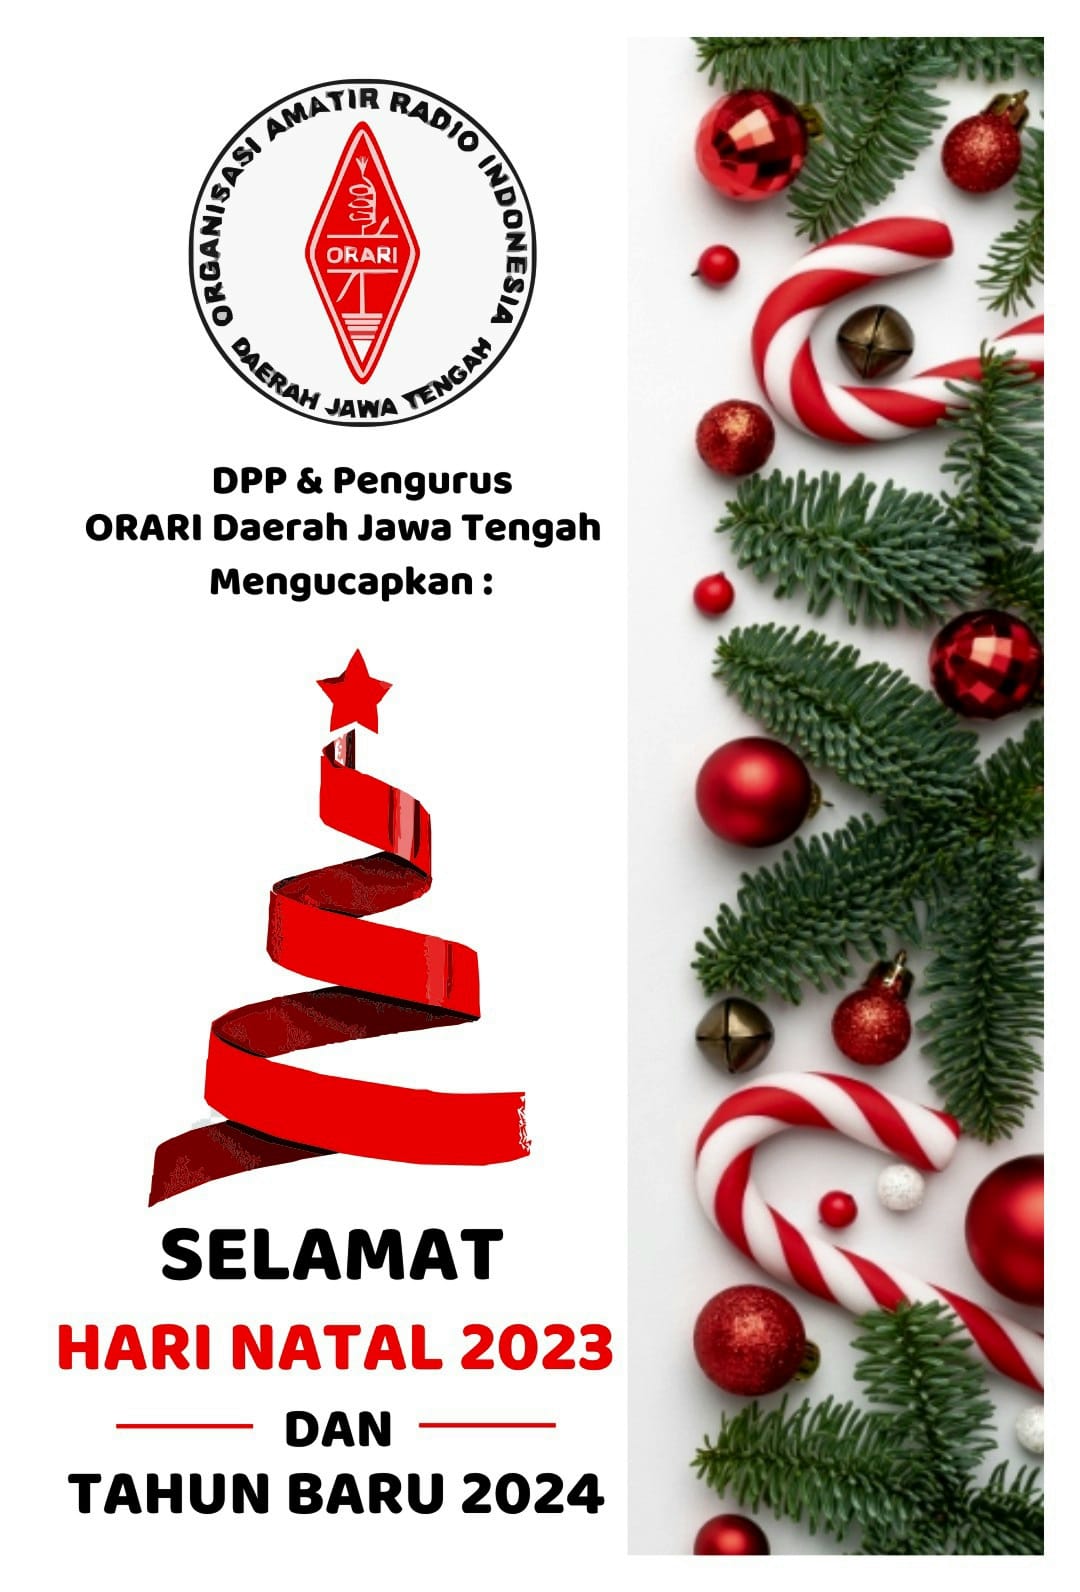 Selamat Natal dan Tahun Baru 2024 ORARI Daerah Jawa Tengah